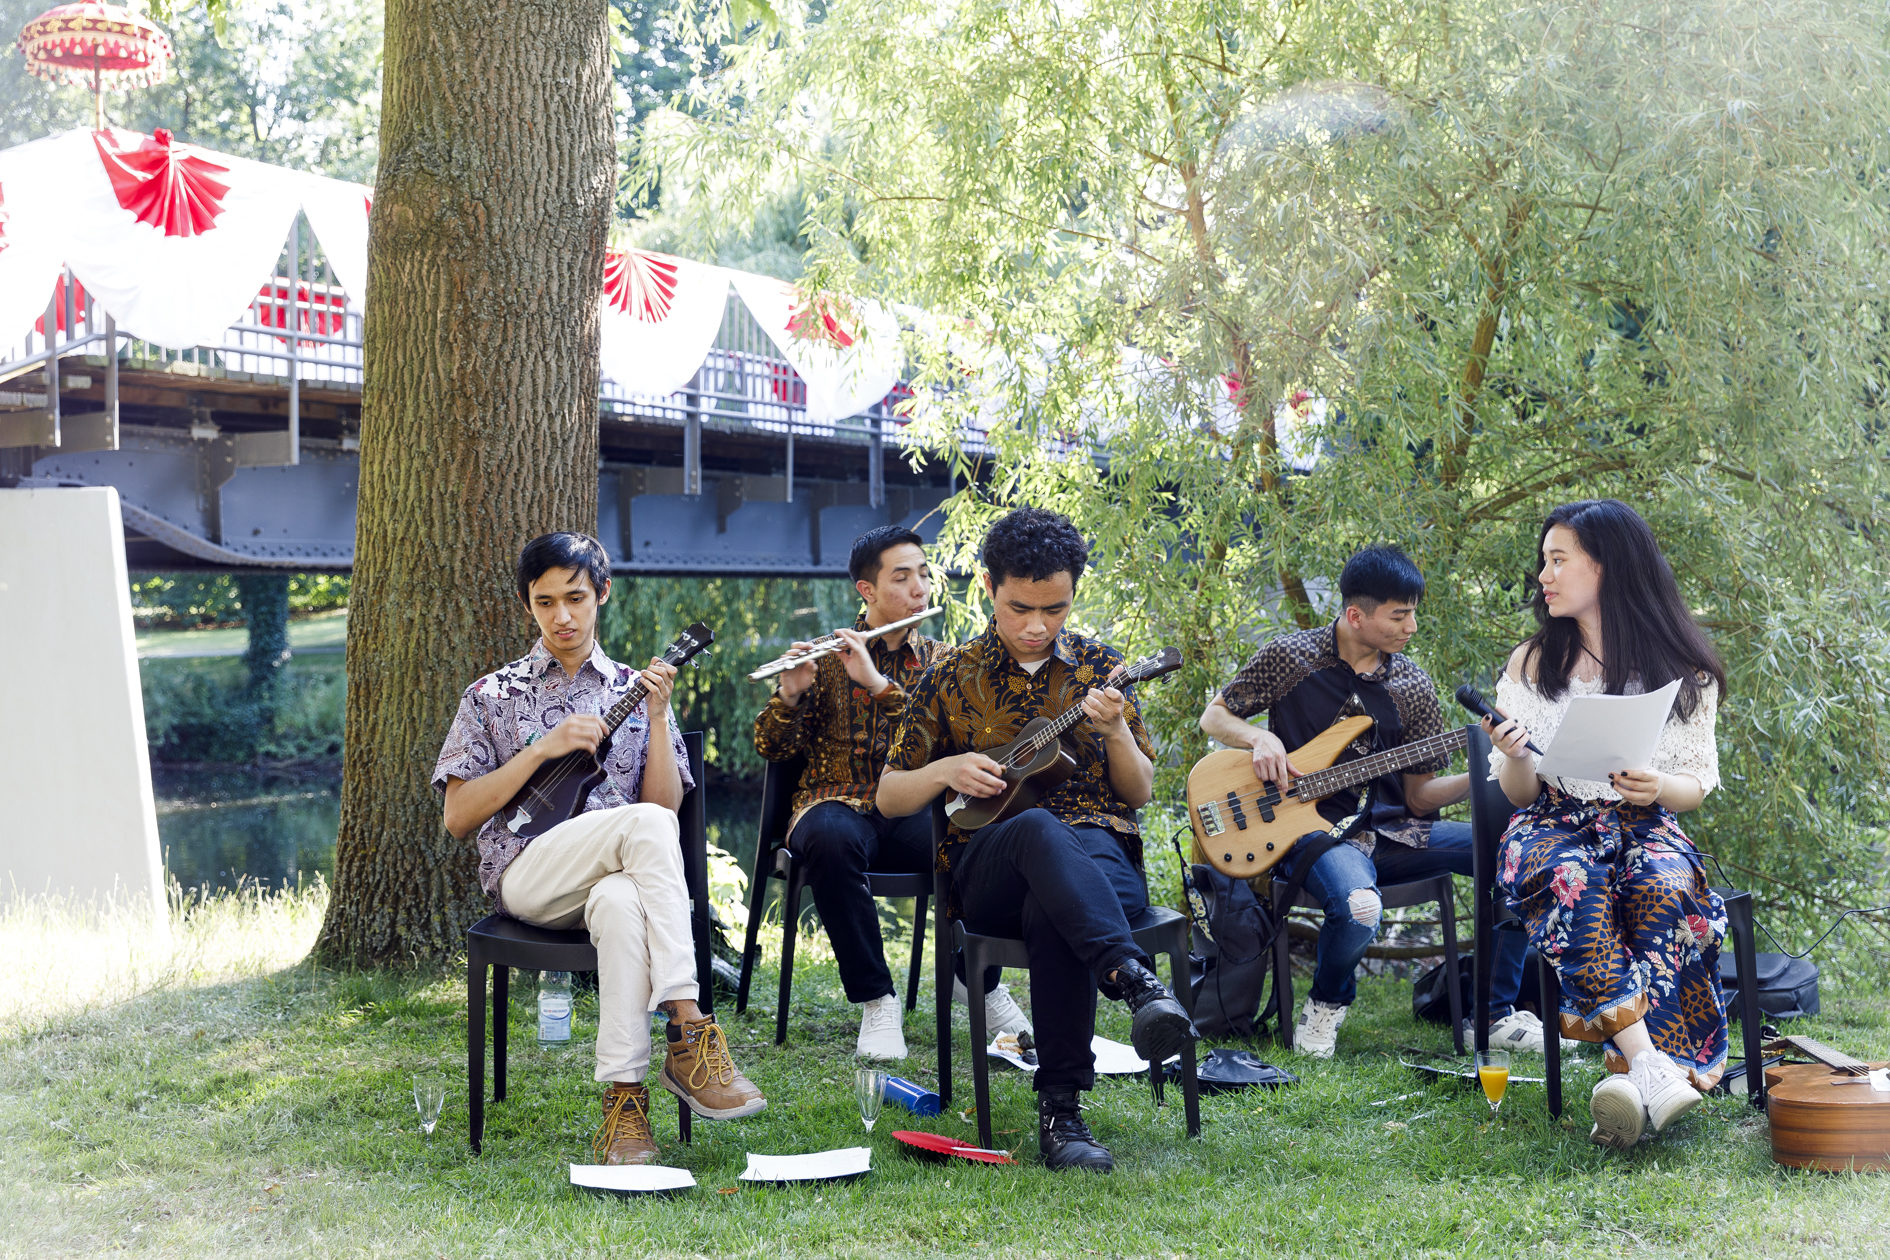 Die Musikgruppe spielt traditionelle indonesische Kroncong-Musik (Zoom on click)